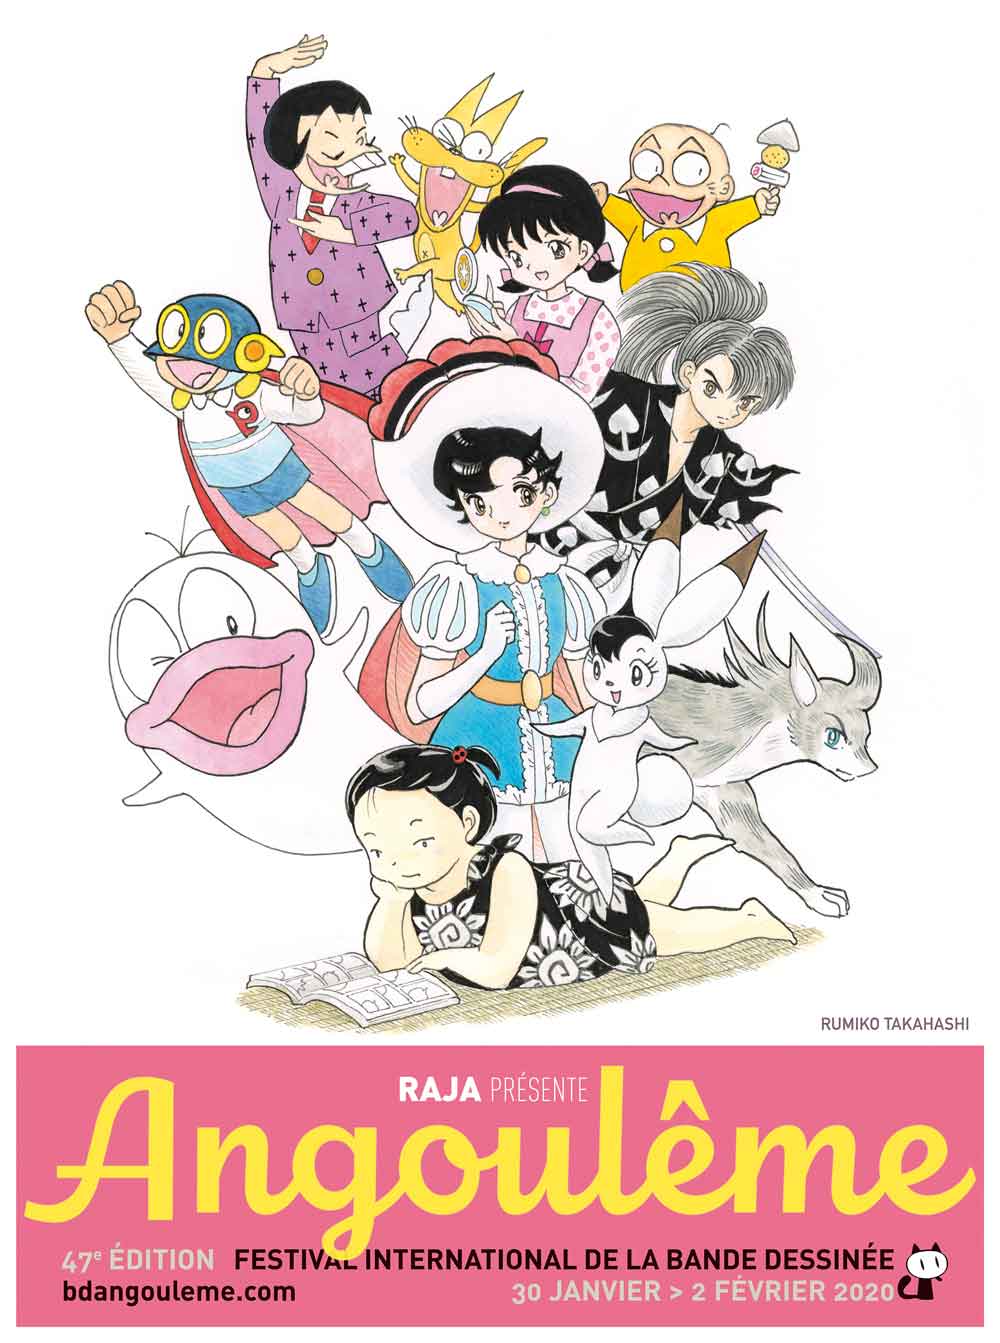 angouleme-2020_AFFICHE-Rumiko-Takahashi